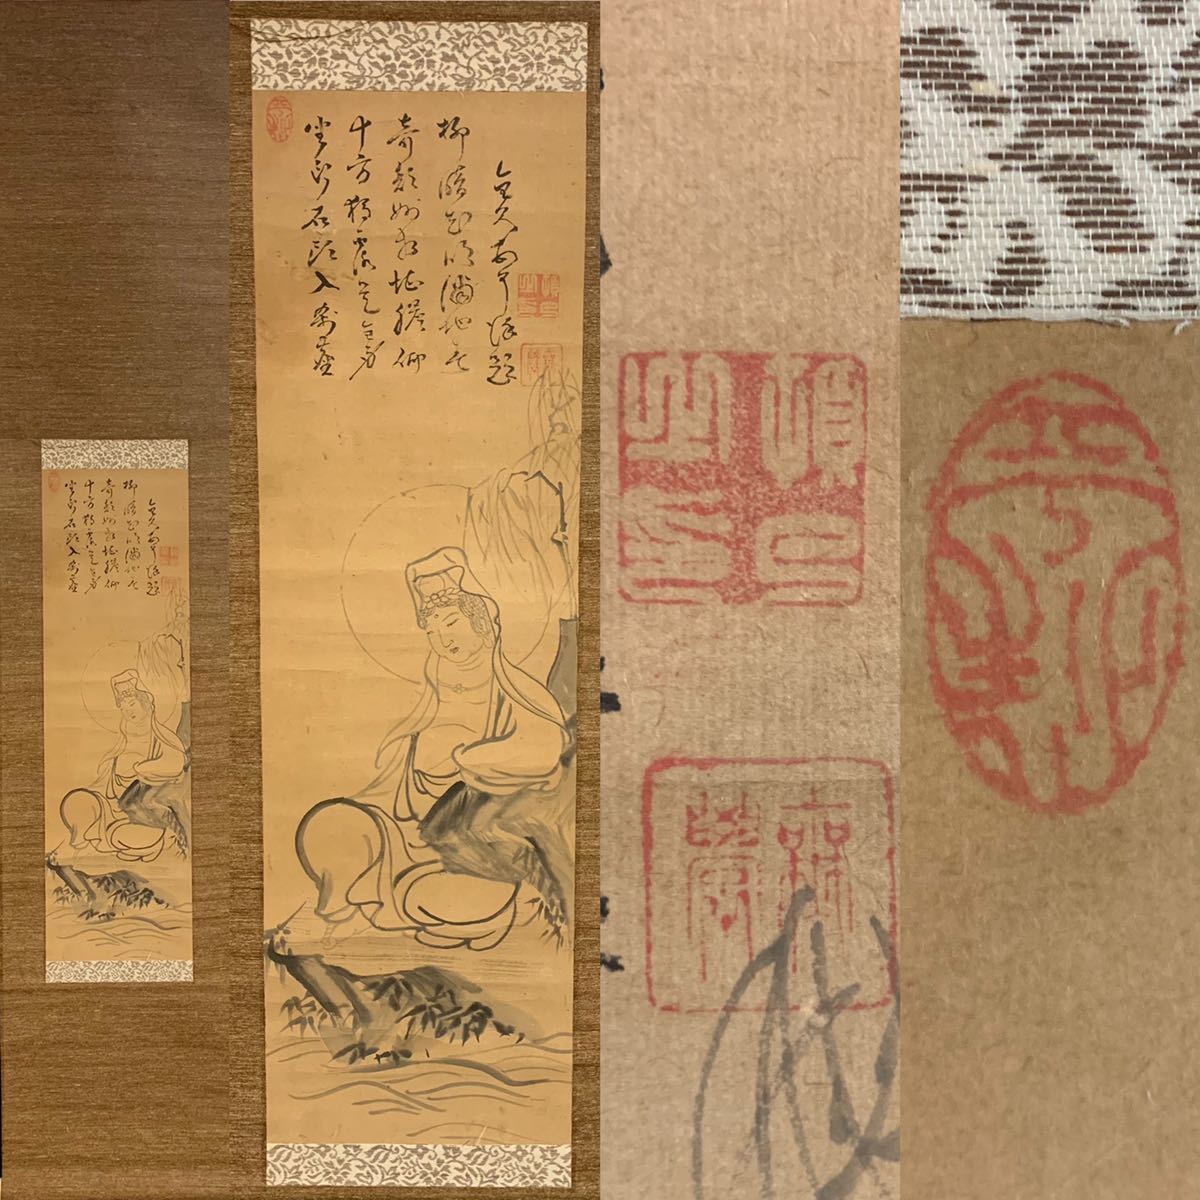 [कॉपी] मशरूम 06) भिक्षु मुगाकू की विलो के नीचे अवलोकितेश्वर लटकता हुआ स्क्रॉल बौद्ध कला लगभग 138 x 28 सेमी, चित्रकारी, जापानी चित्रकला, व्यक्ति, बोधिसत्त्व